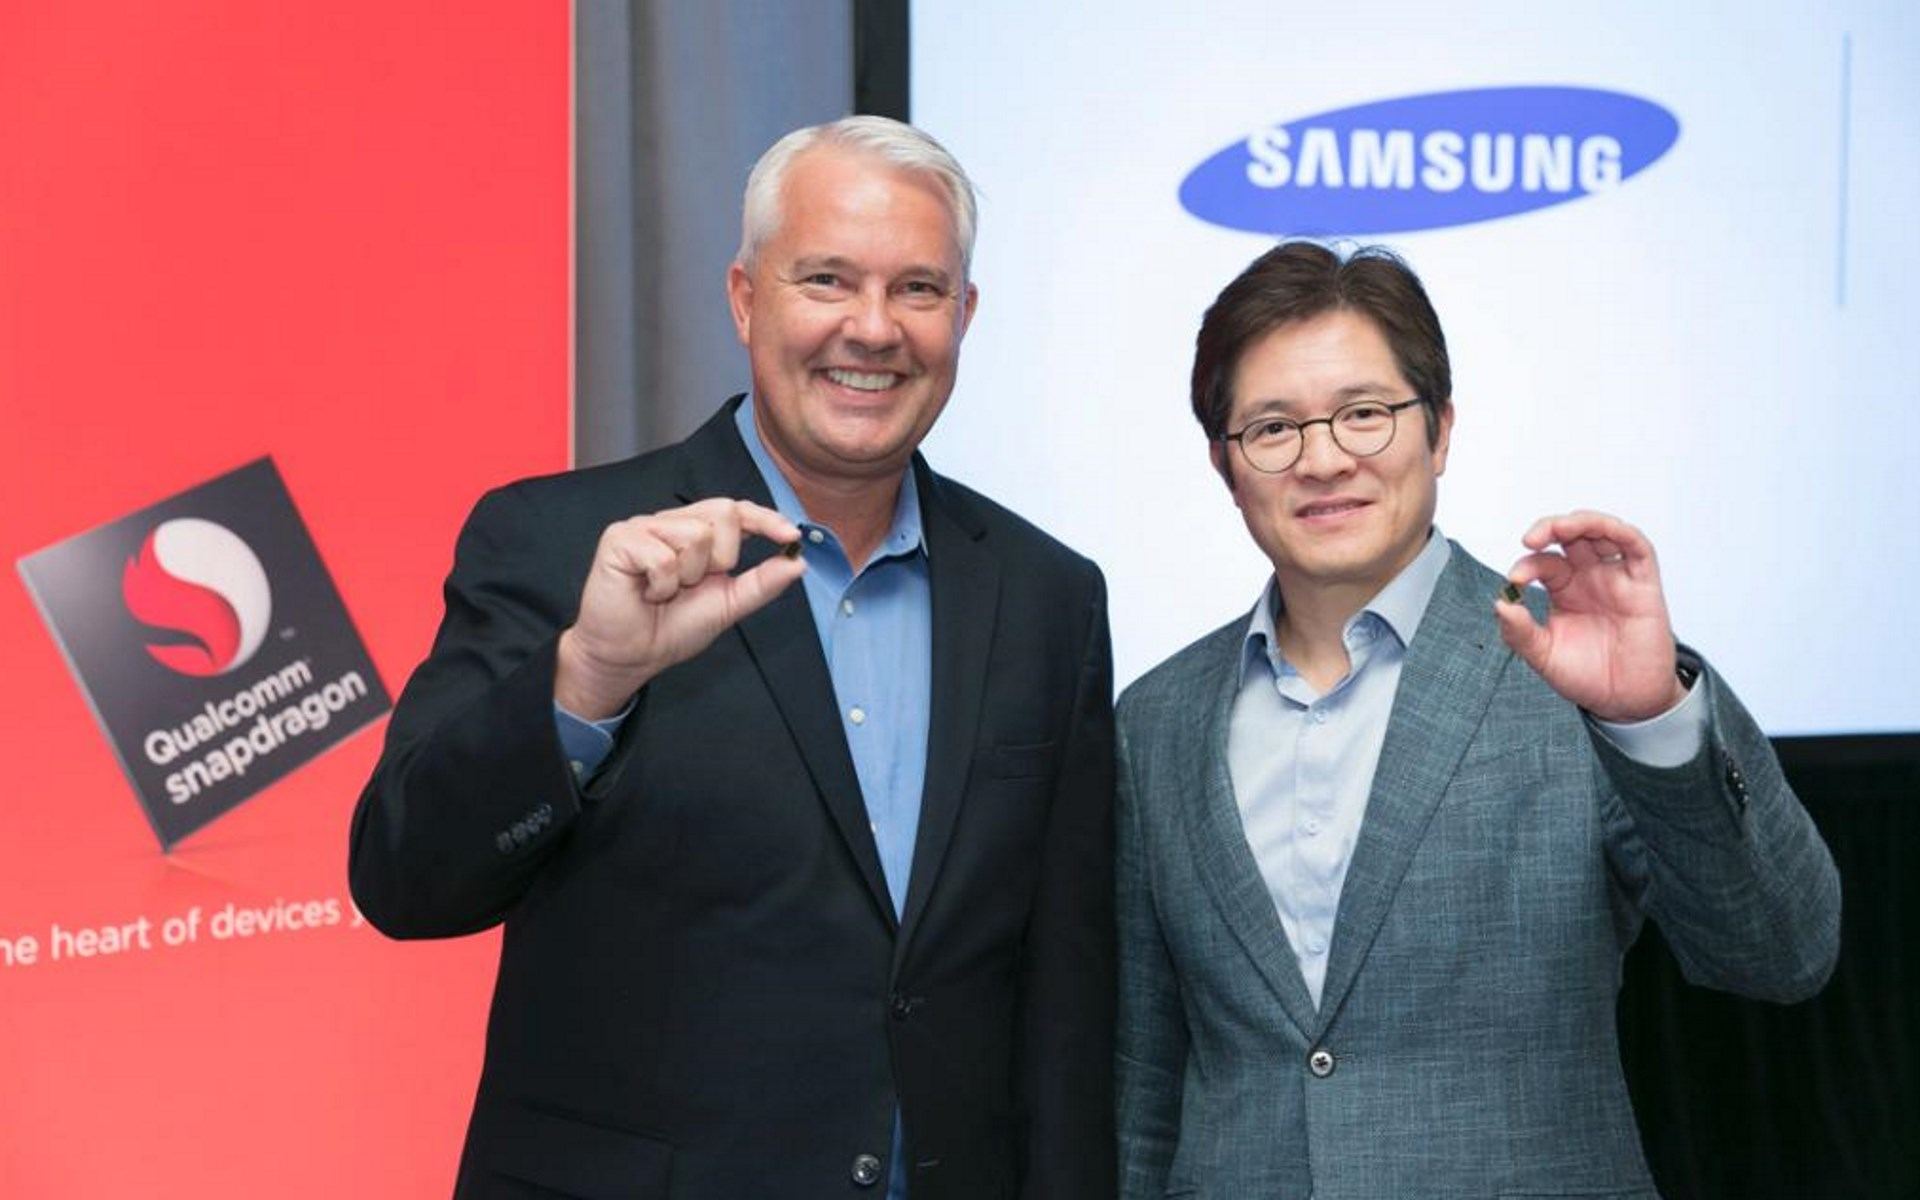 Empresas de teléfonos inteligentes acusan a Samsung de acaparar el suministro de chipsets Snapdragon 835: informes